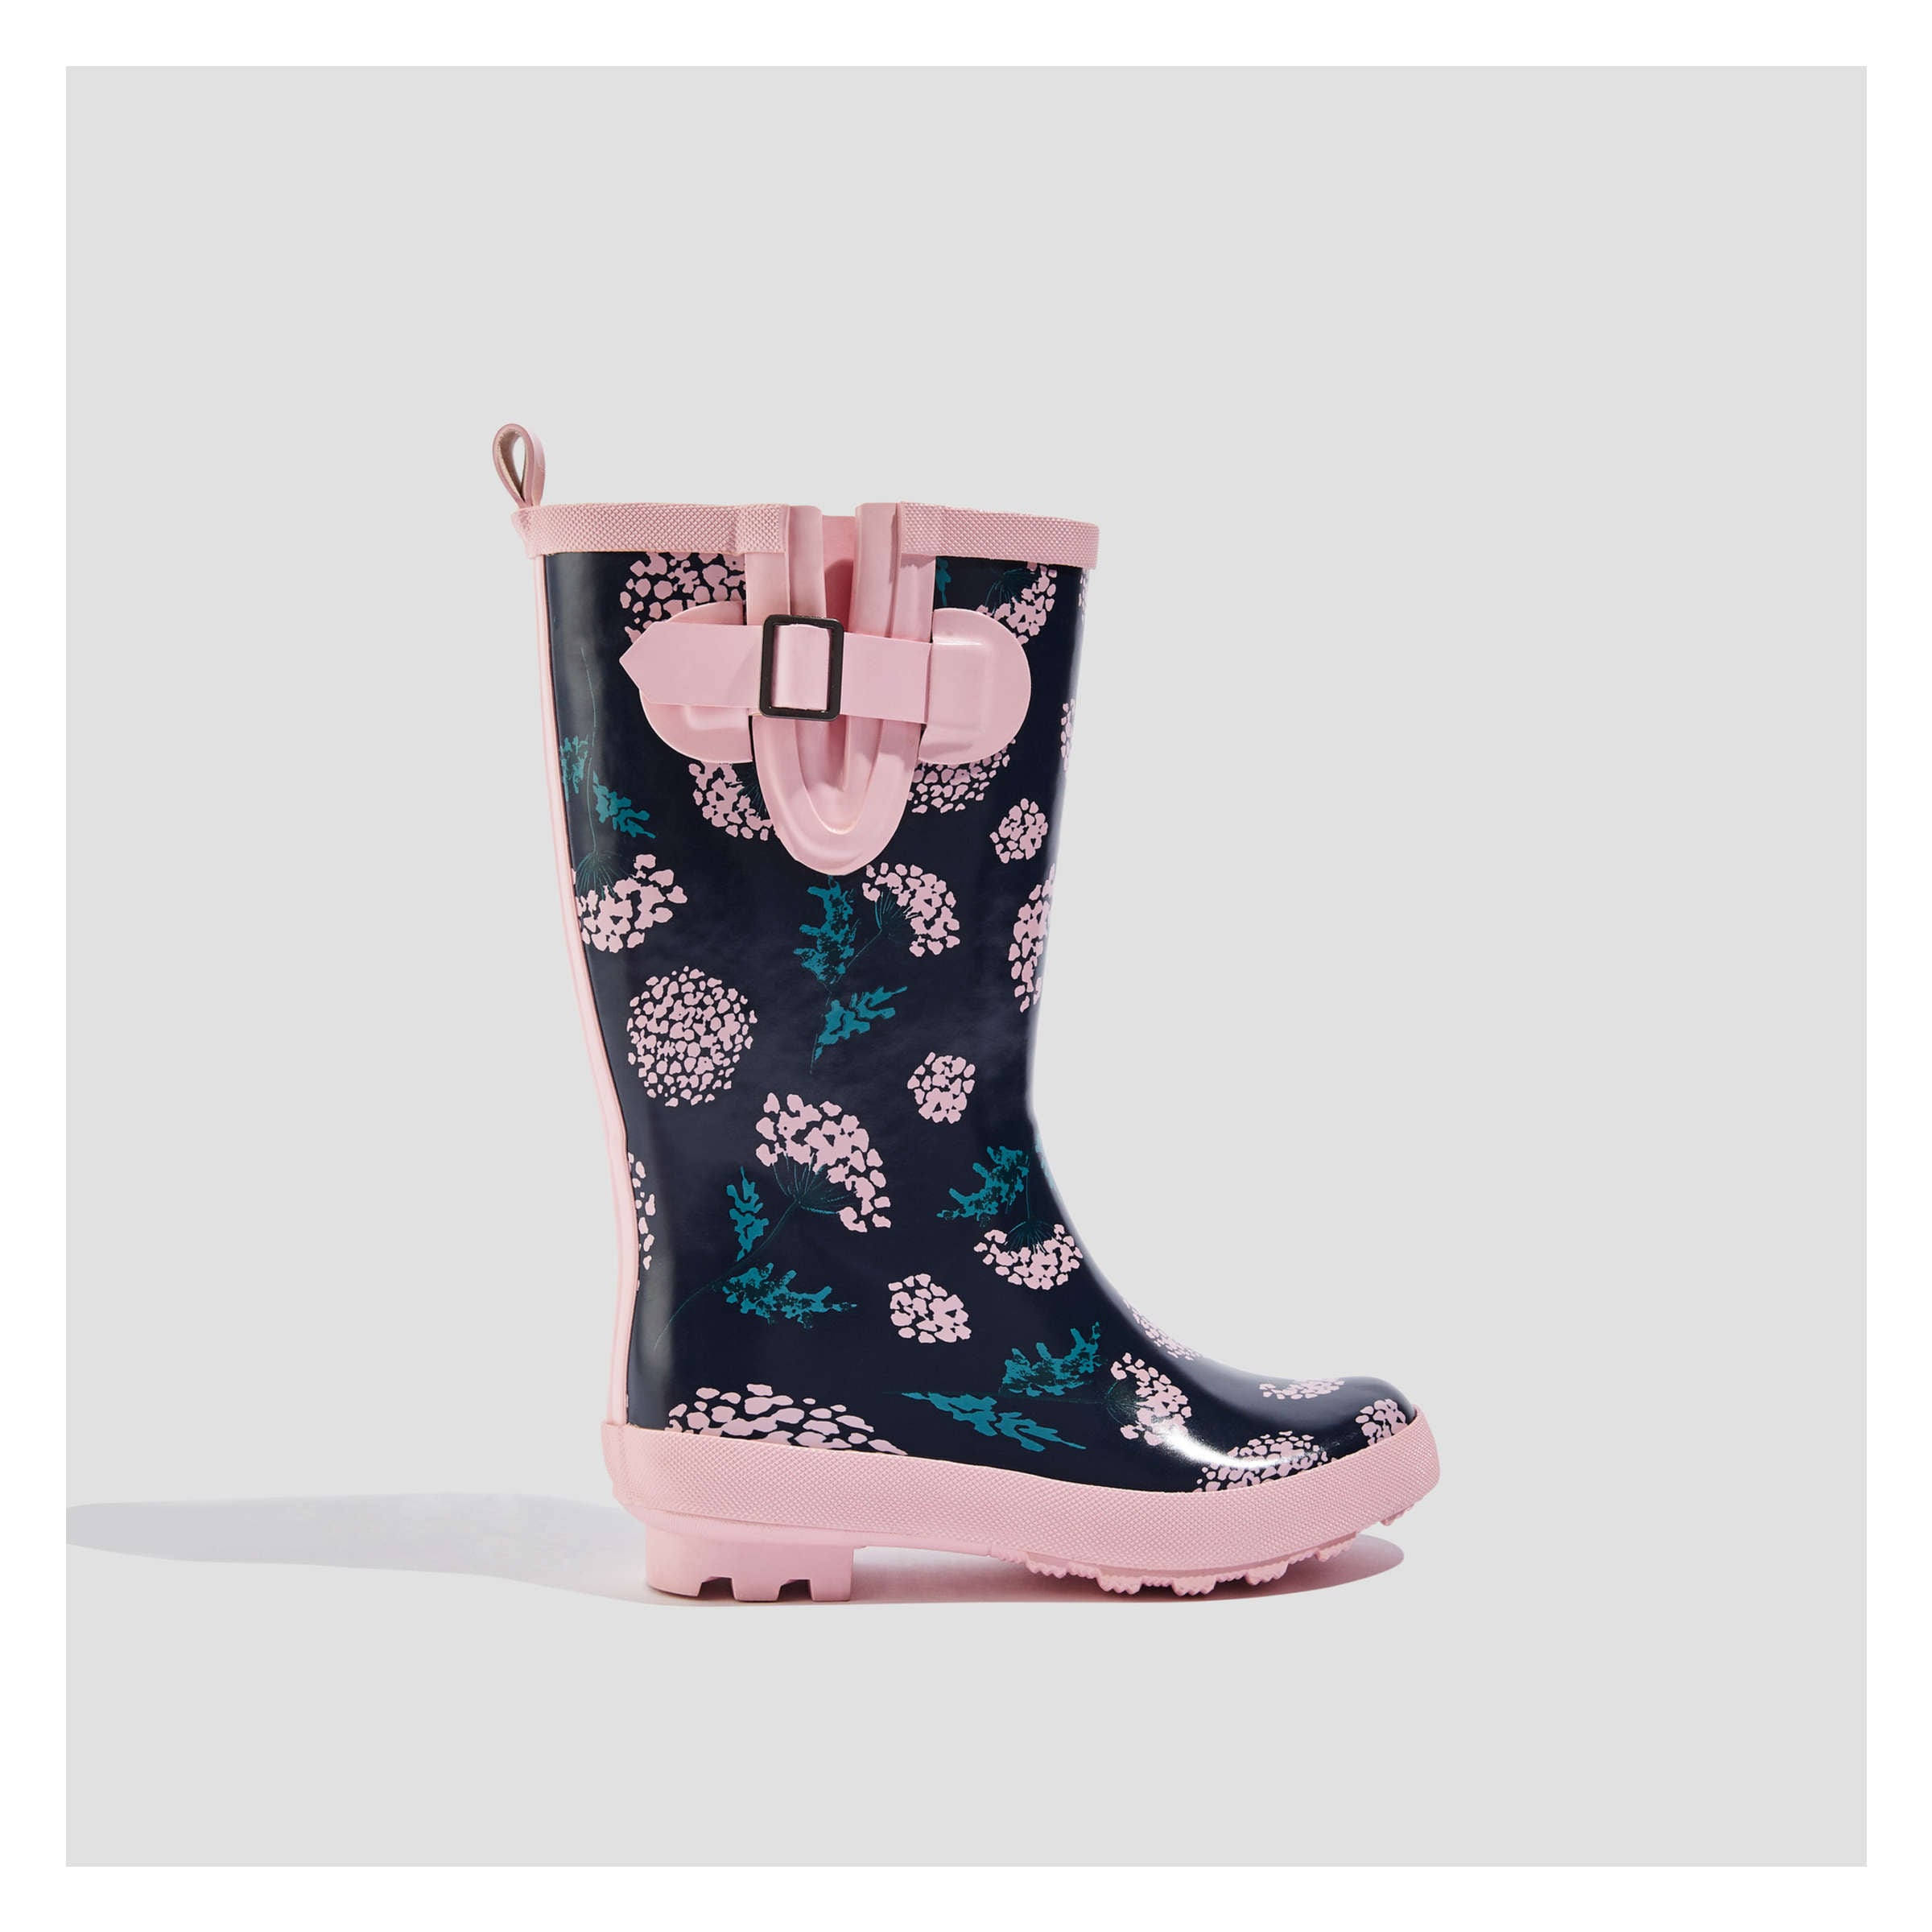 light pink rain boots